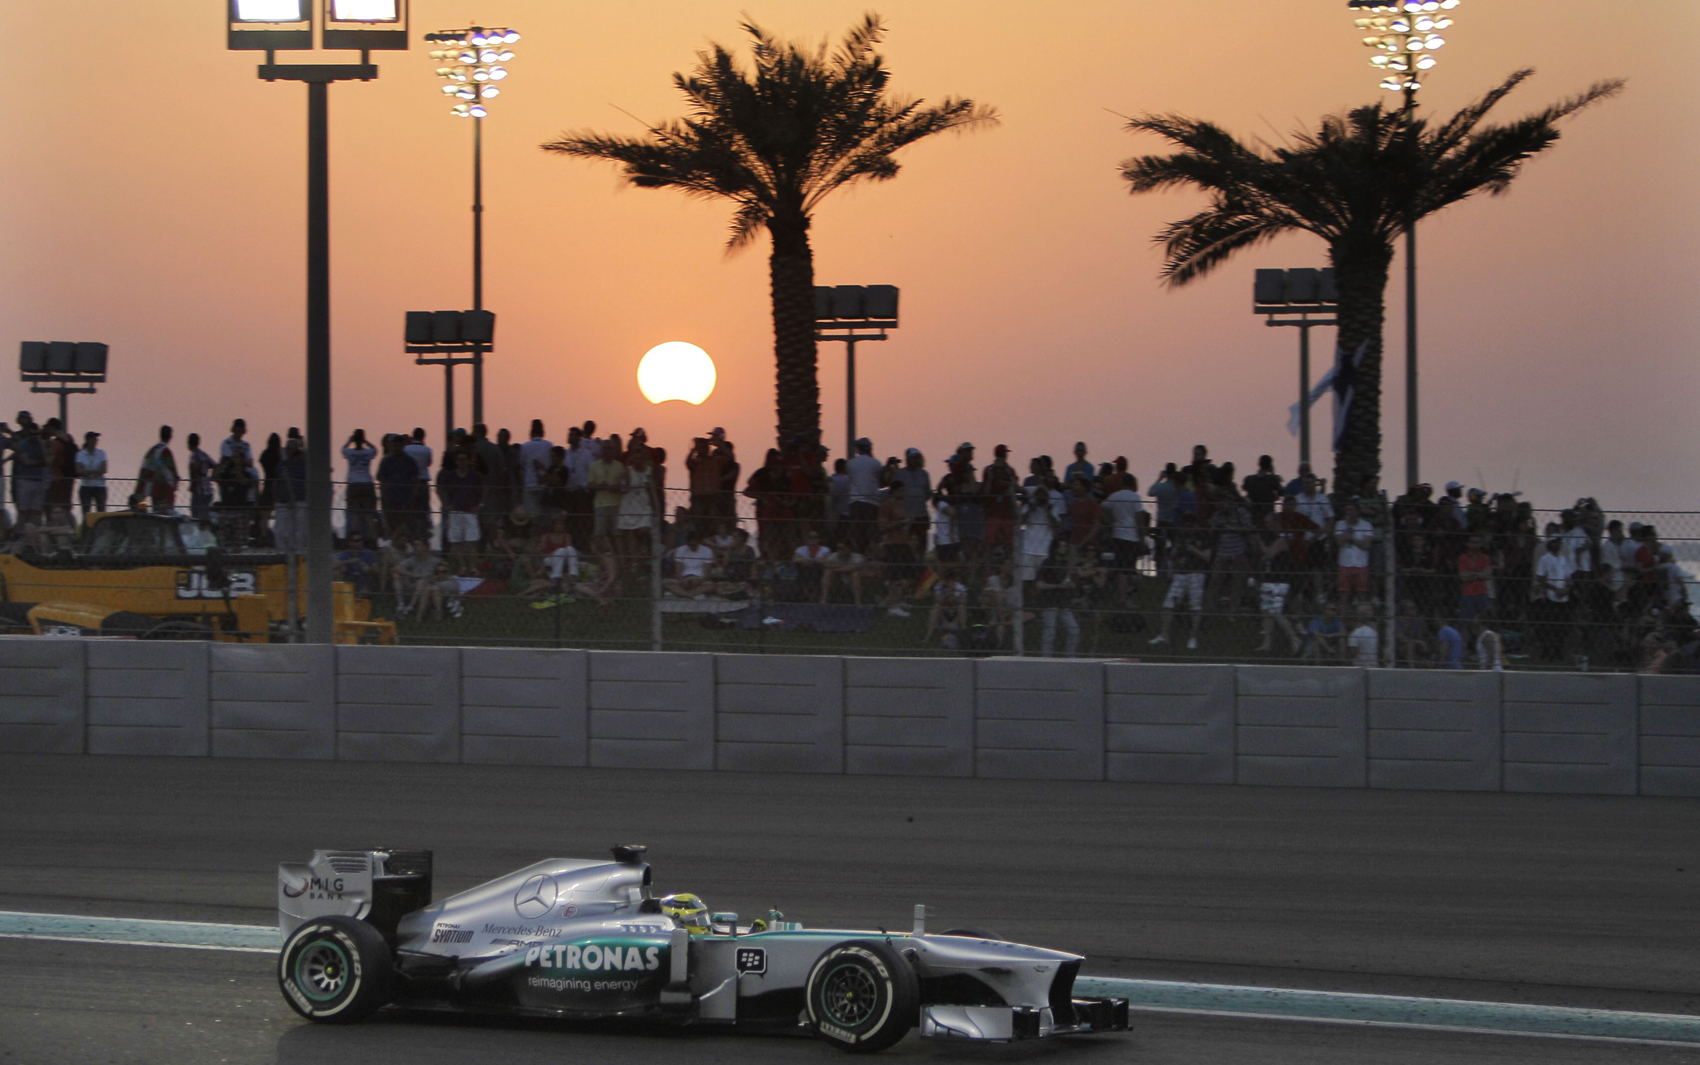 Eclipse solar foi visto neste domingo durante o Abu Dhabi Formula One Grand Prix, que aconteceu na Yas Marina, em Abu Dhabi, nos Emirados Árabes